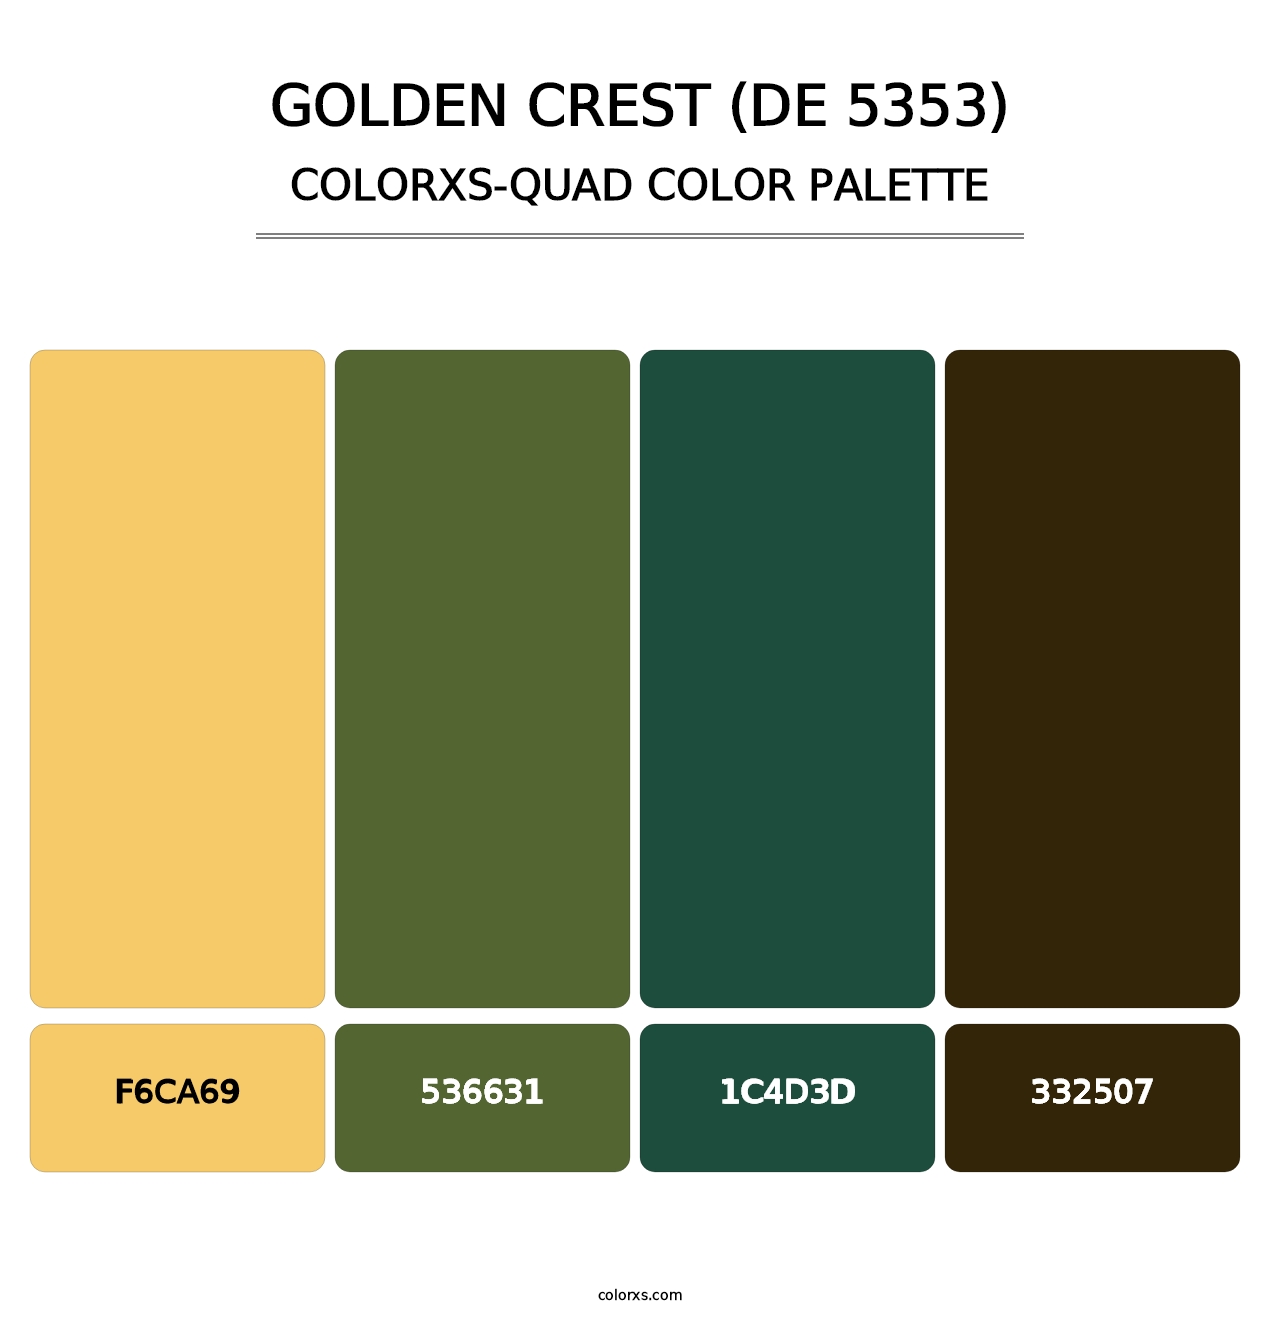 Golden Crest (DE 5353) - Colorxs Quad Palette